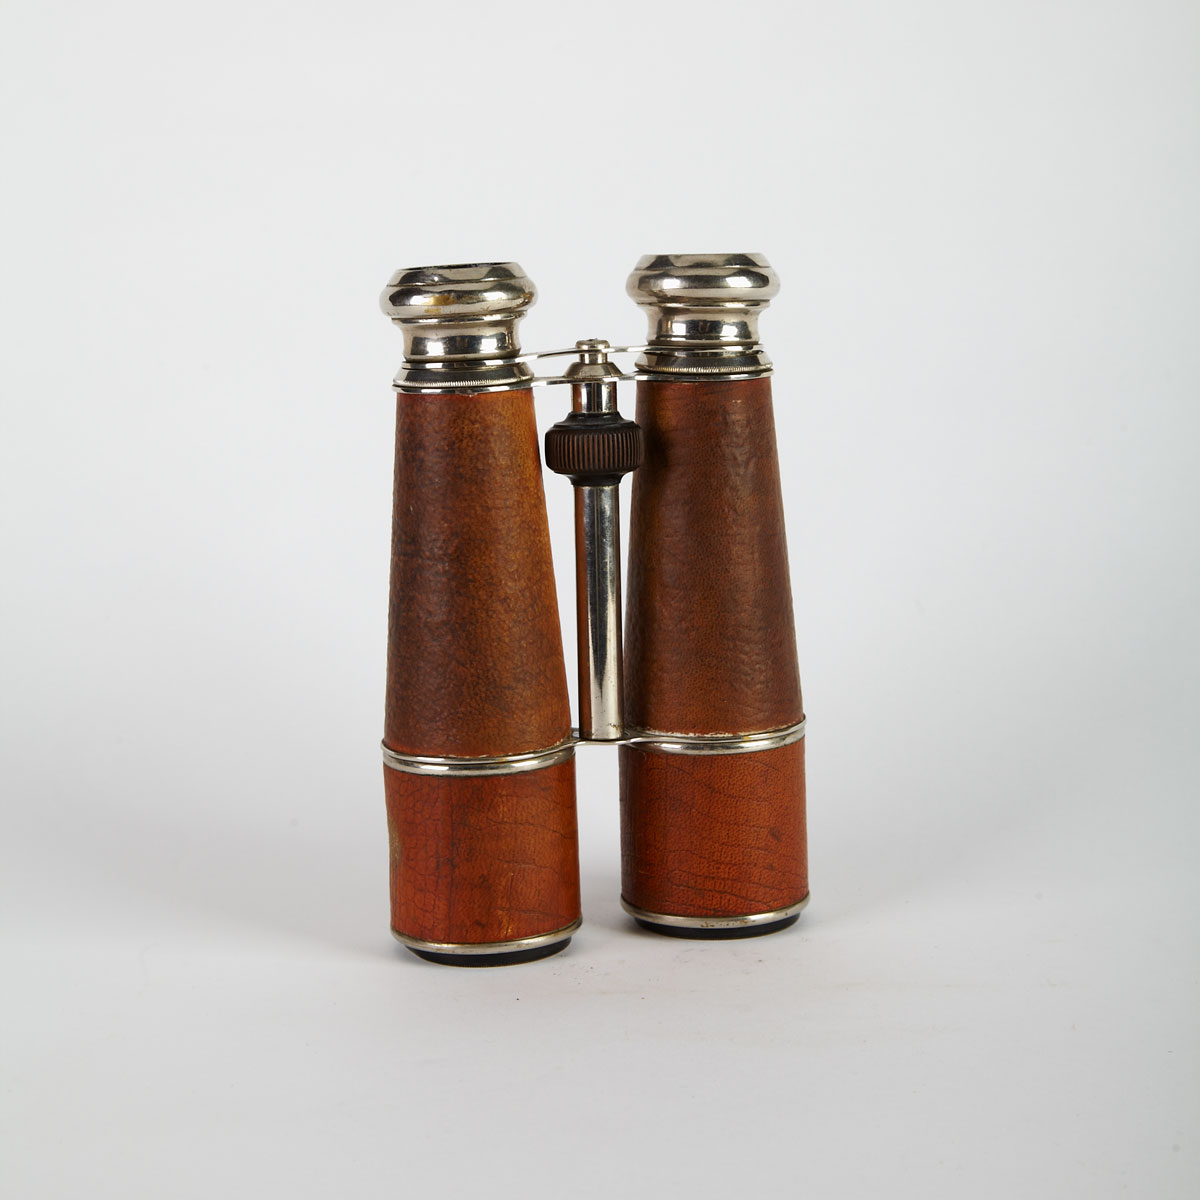 Pair of French Nickel Field Binoculars